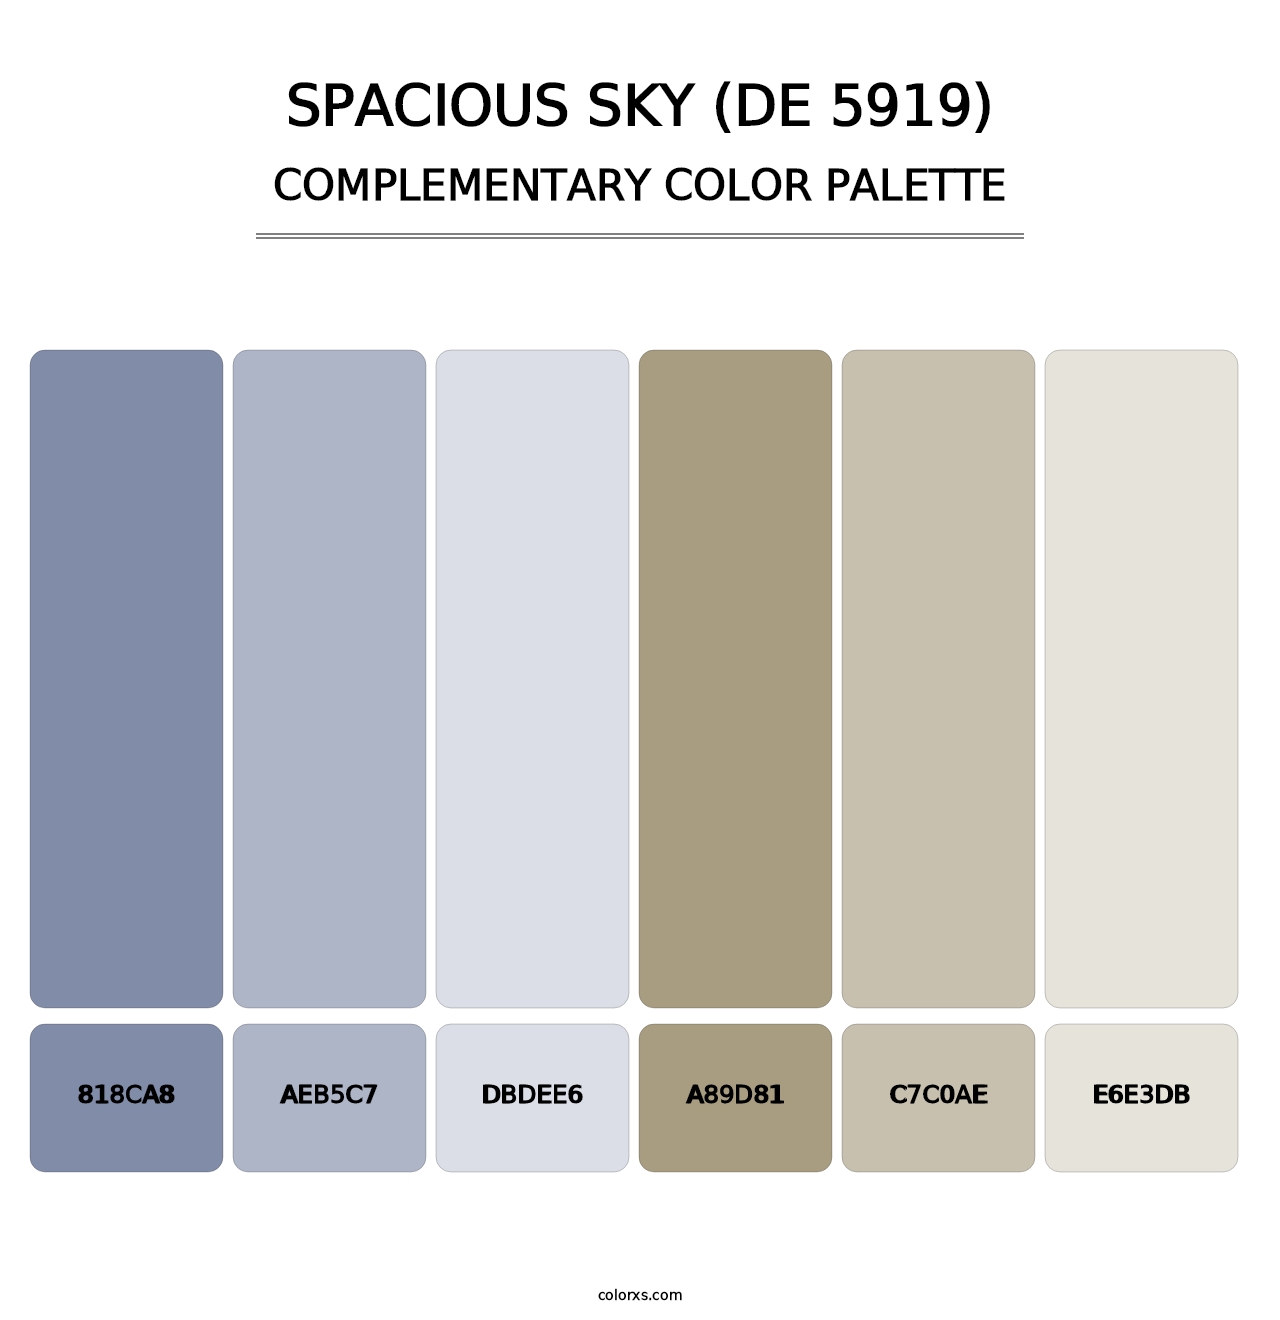 Spacious Sky (DE 5919) - Complementary Color Palette